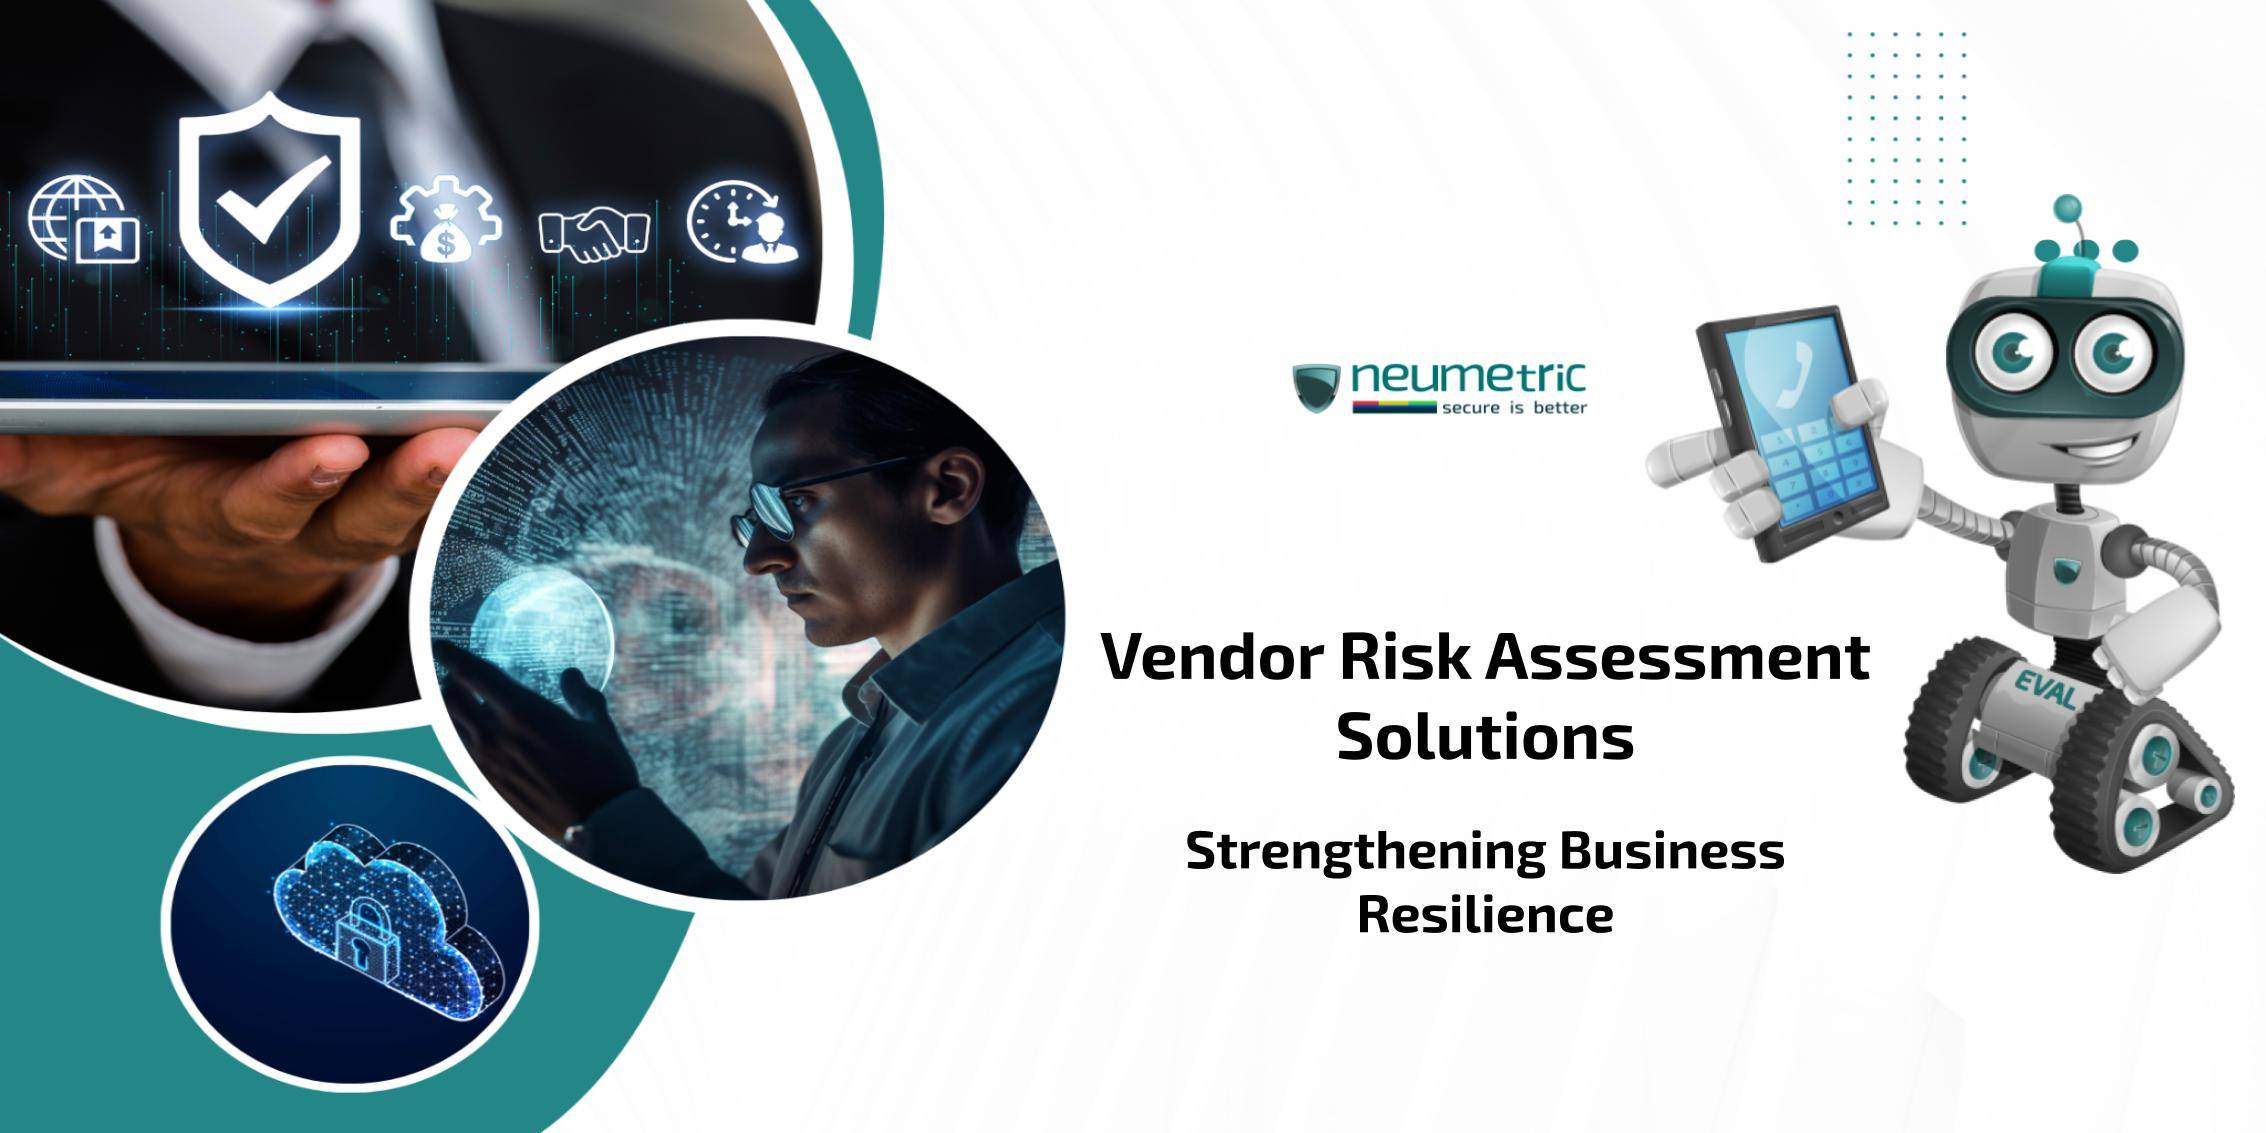 Vendor Risk Assessment Solutions: Strengthening Business Resilience